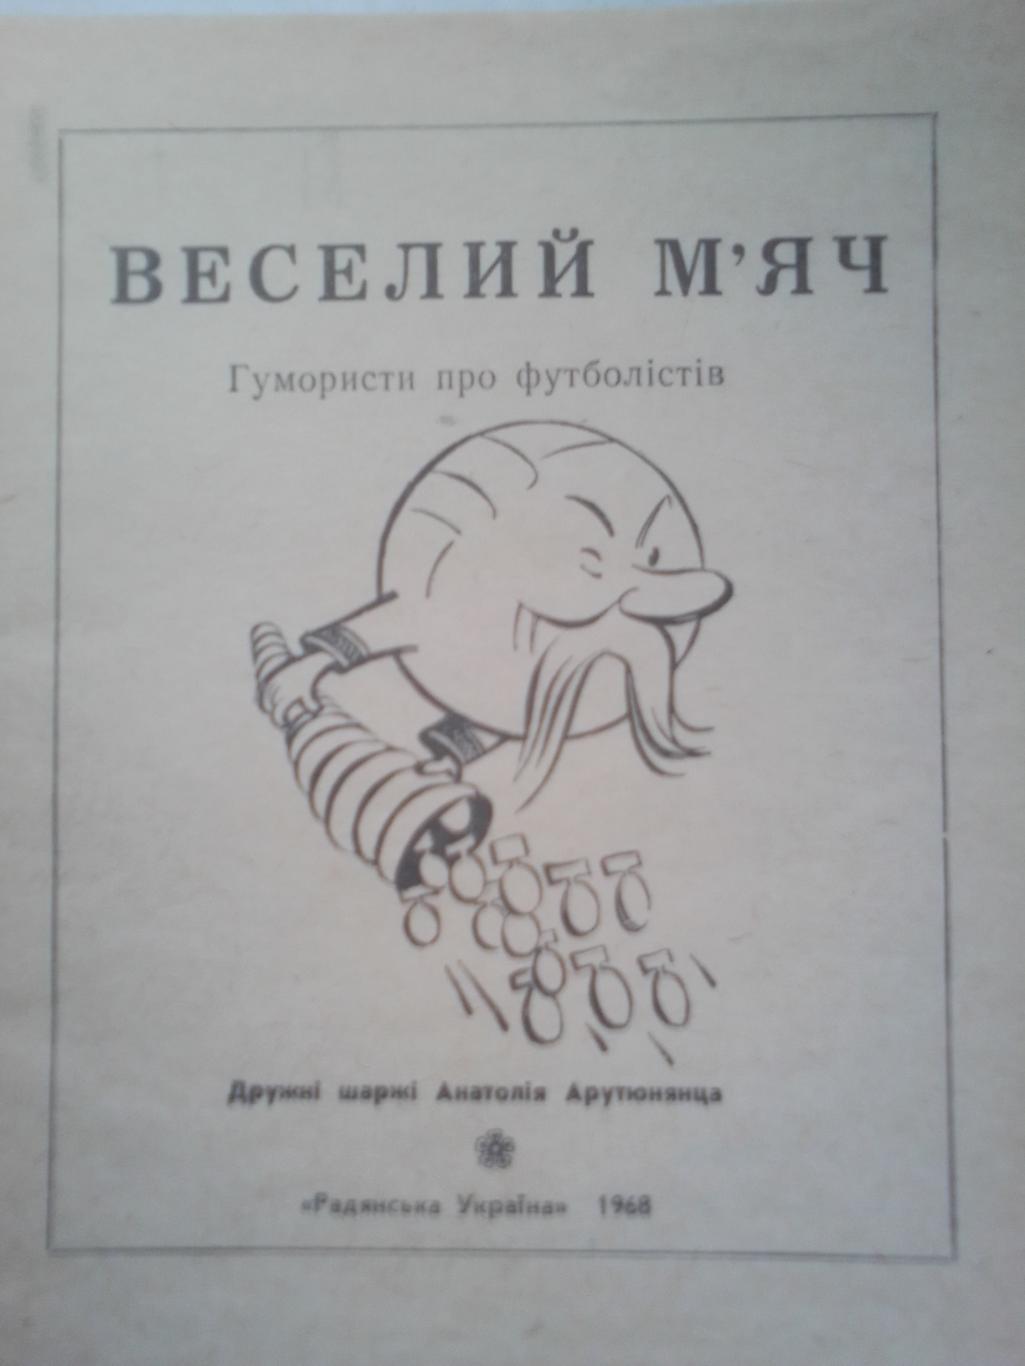 Книга: Веселый Мяч.На Украинском языке.Юмористы про футболистов. 1